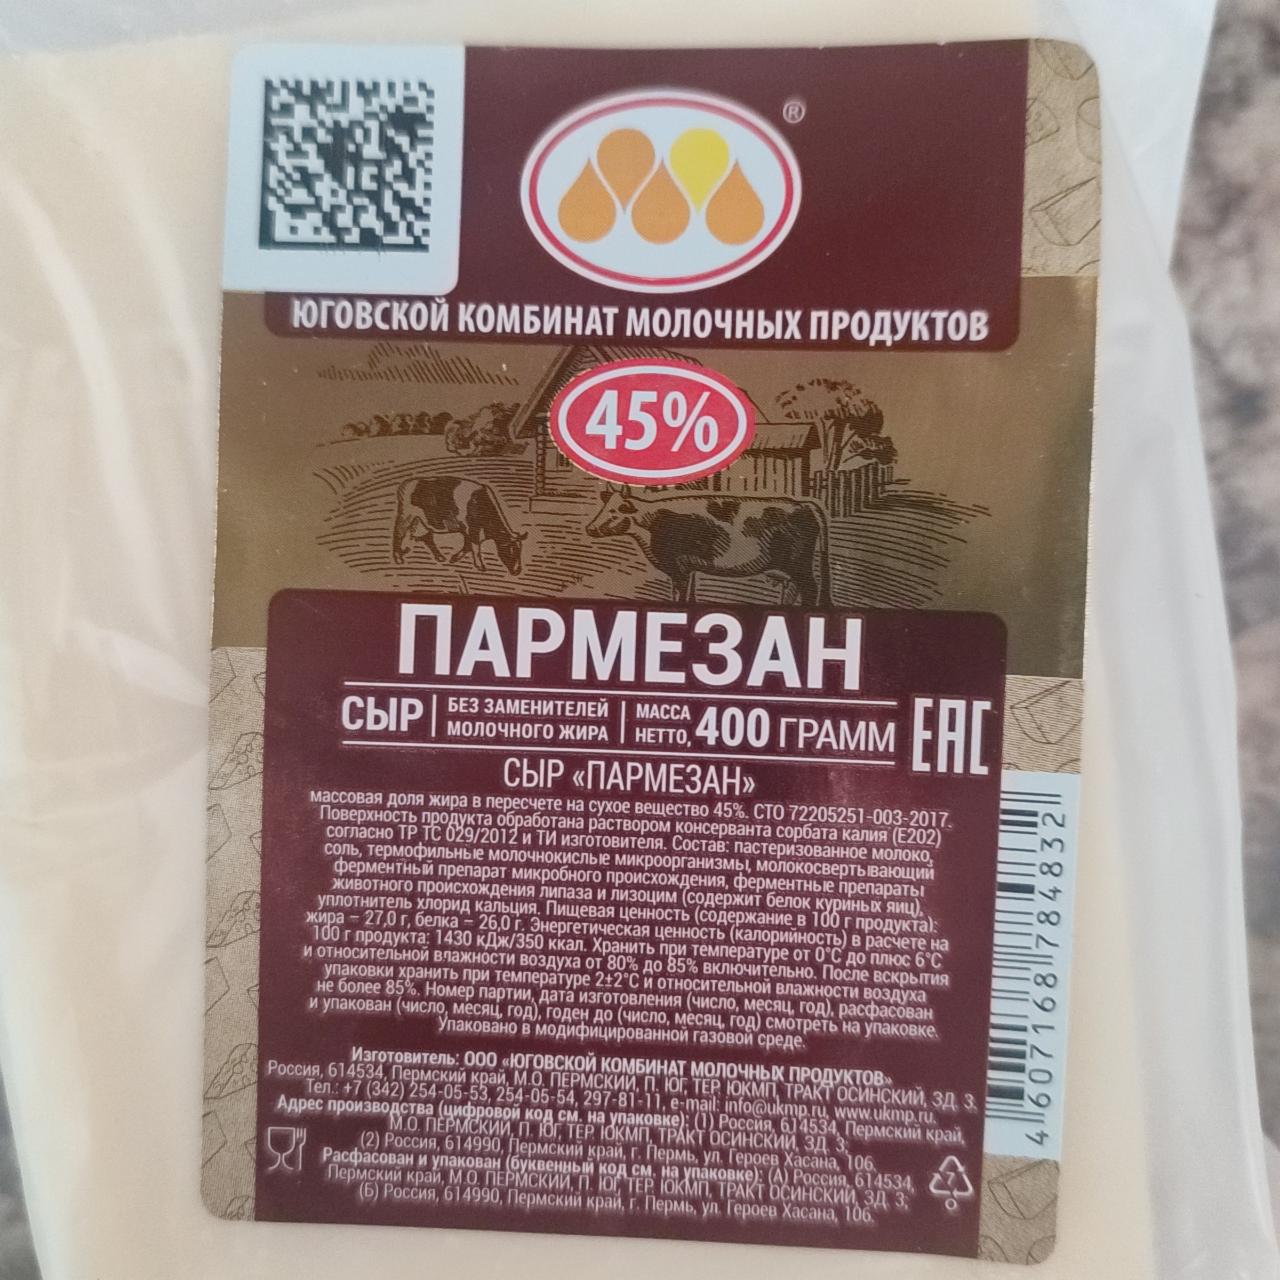 Фото - Сыр пармезан 45% Юговской комбинат молочных продуктов